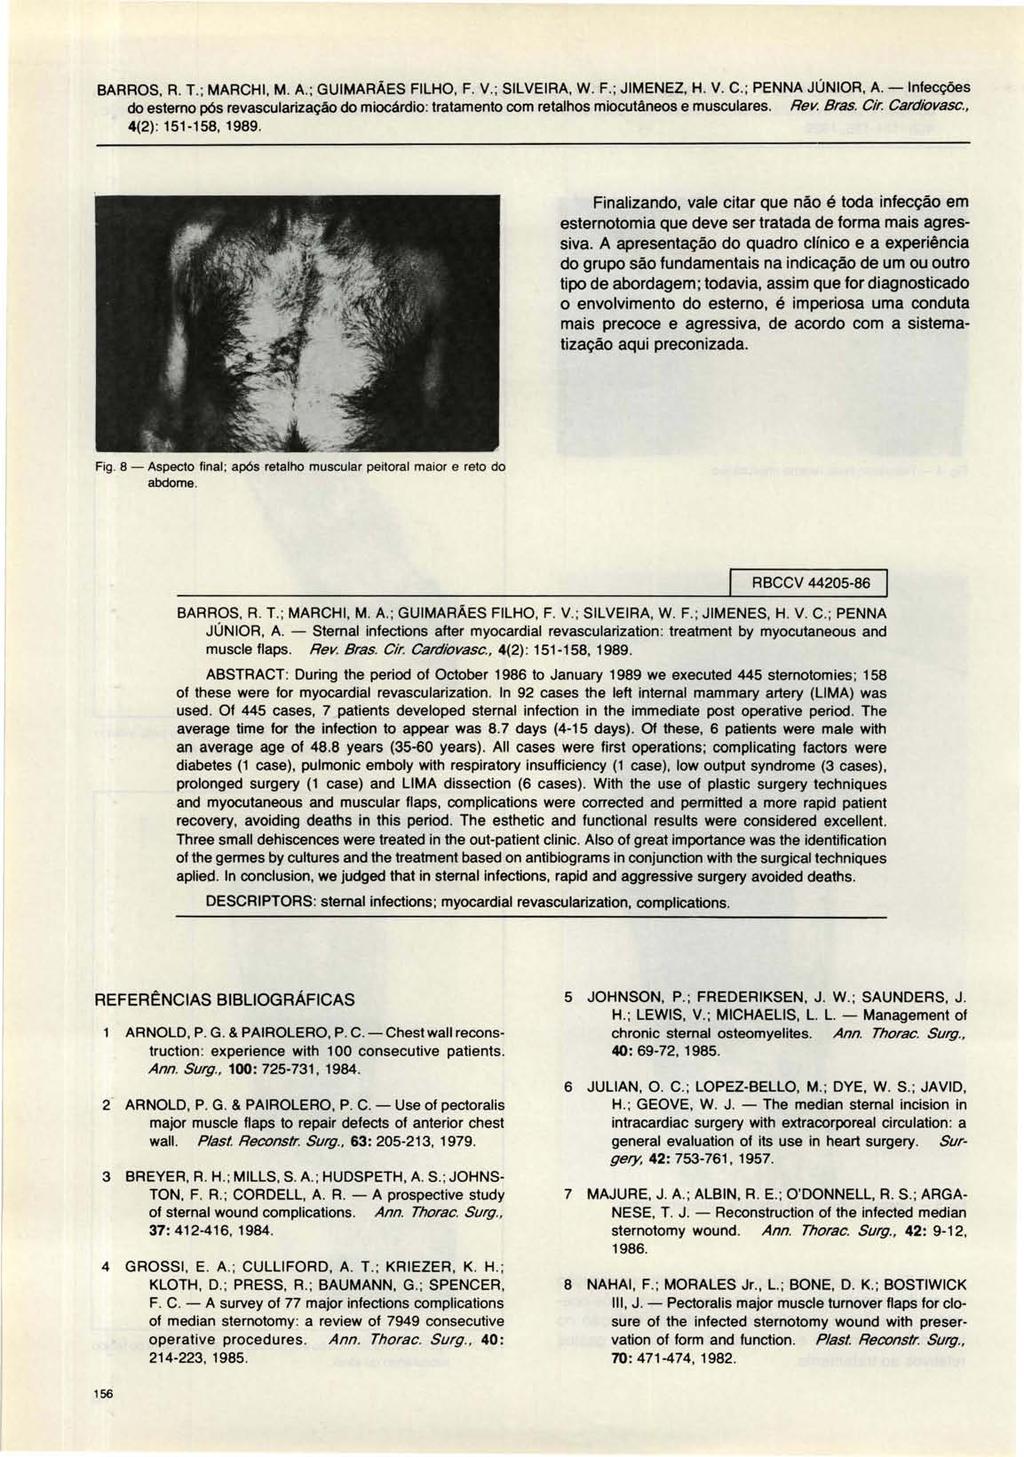 BARROS, R. T. ; MARCHI, M. A.; GUIMARÃES FILHO, F. V.; SILVEIRA, W. F.; JIMENEZ, H. V. C.; PENNA JÚNIOR, A. -Inlecções 4(2): 151-158, 1989.